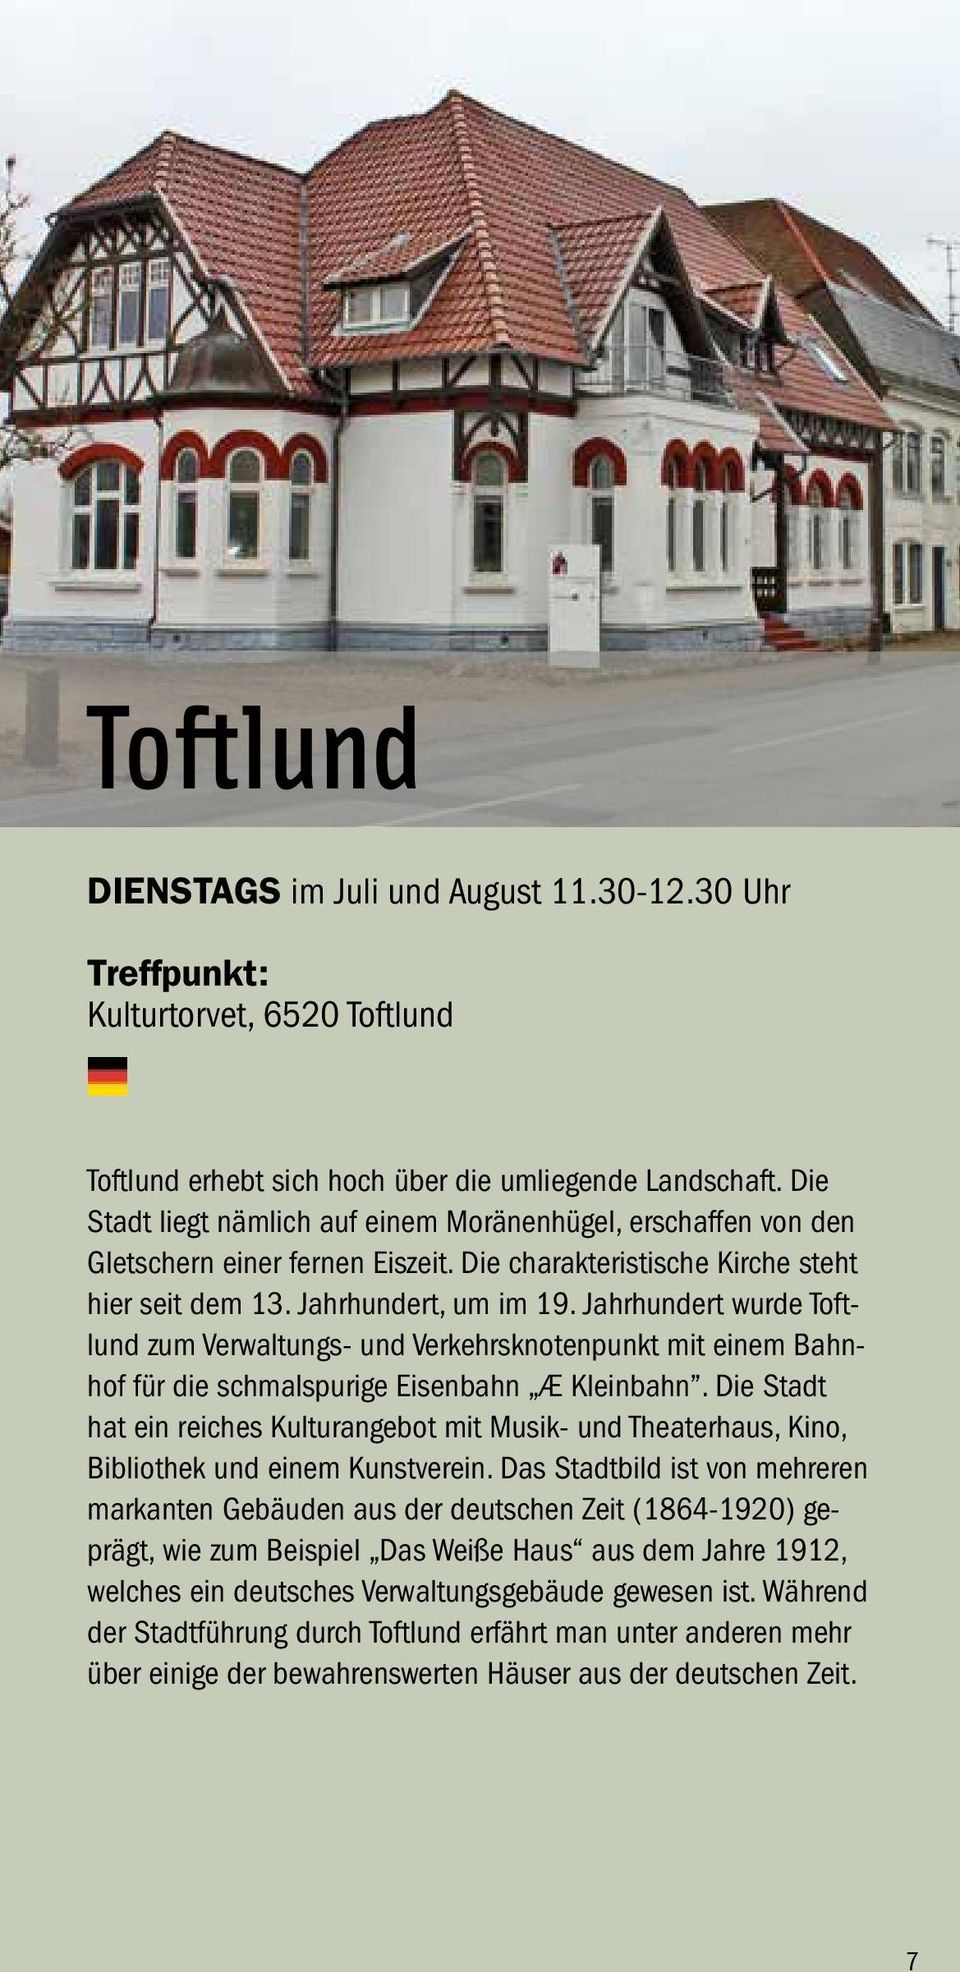 Jahrhundert wurde Toftlund zum Verwaltungs- und Verkehrsknotenpunkt mit einem Bahnhof für die schmalspurige Eisenbahn Æ Kleinbahn.